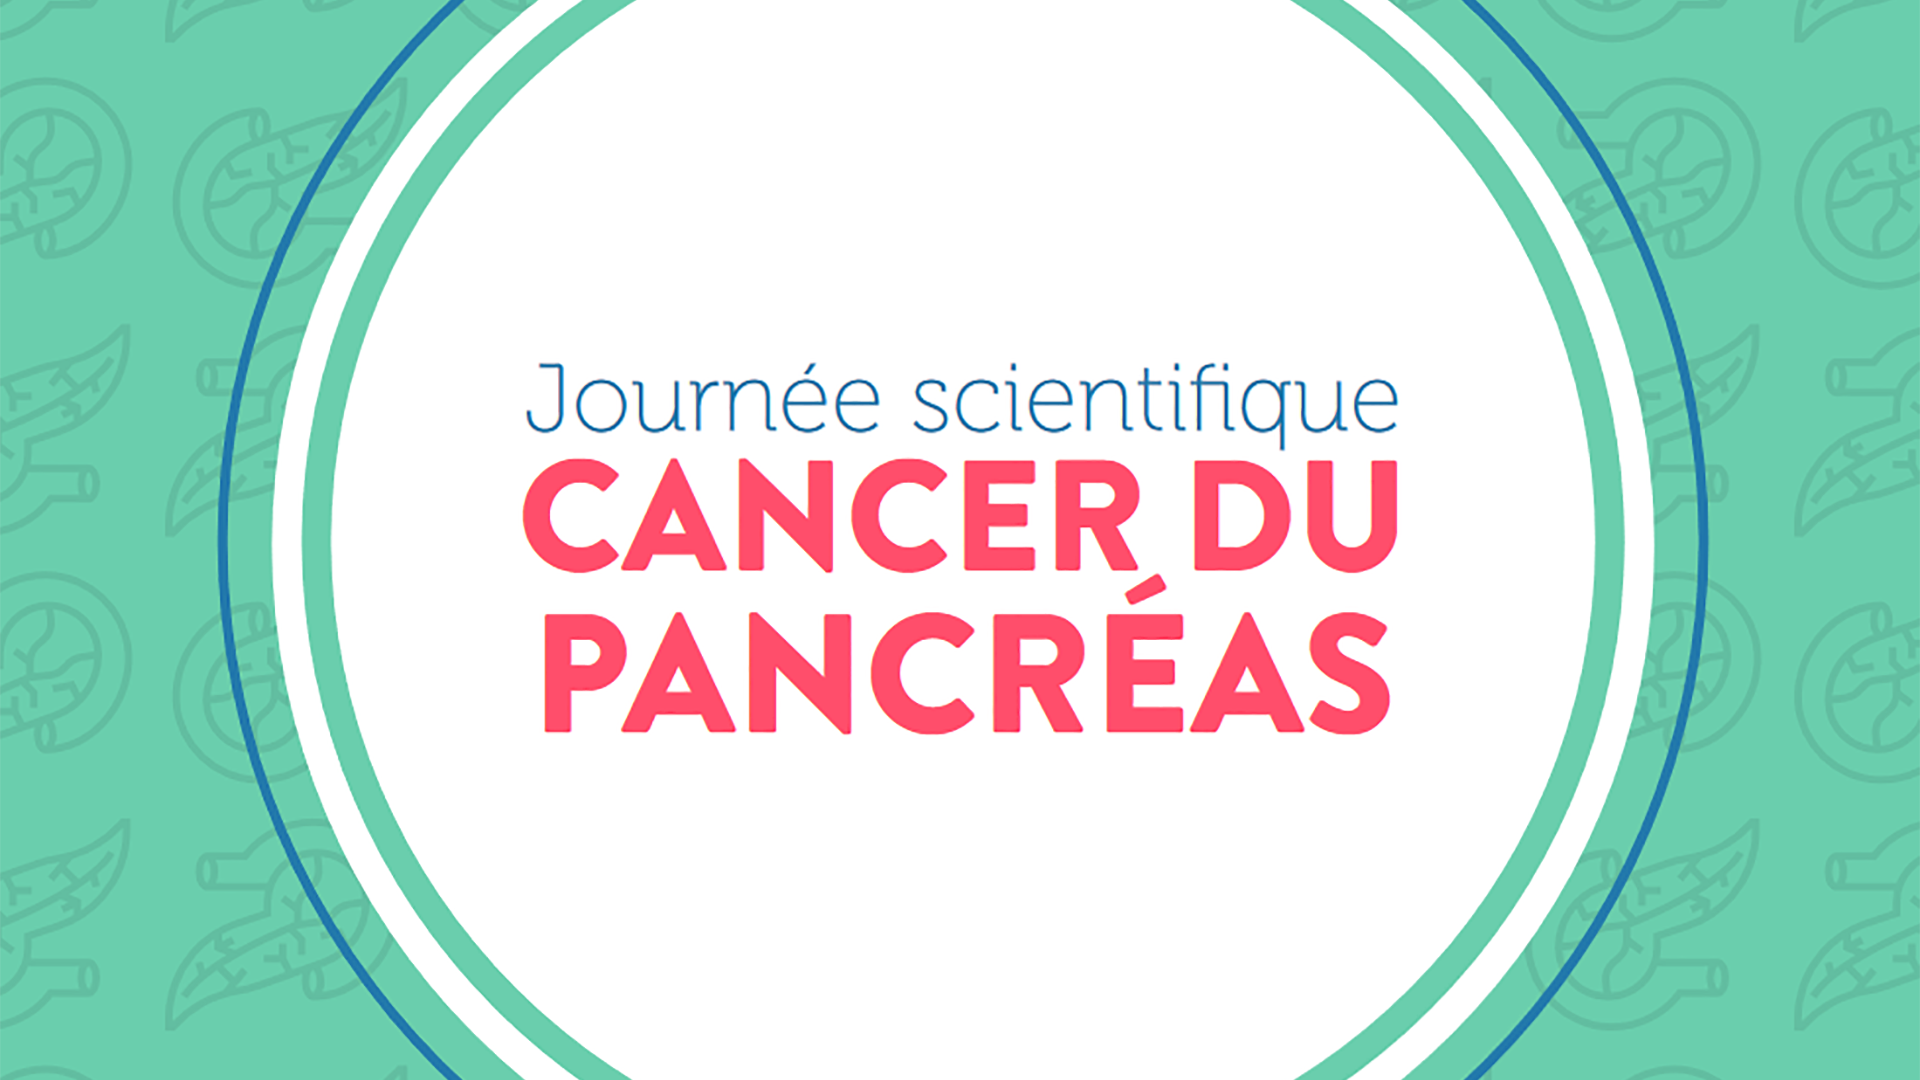 Identifier les priorités de la recherche sur le cancer du pancréas